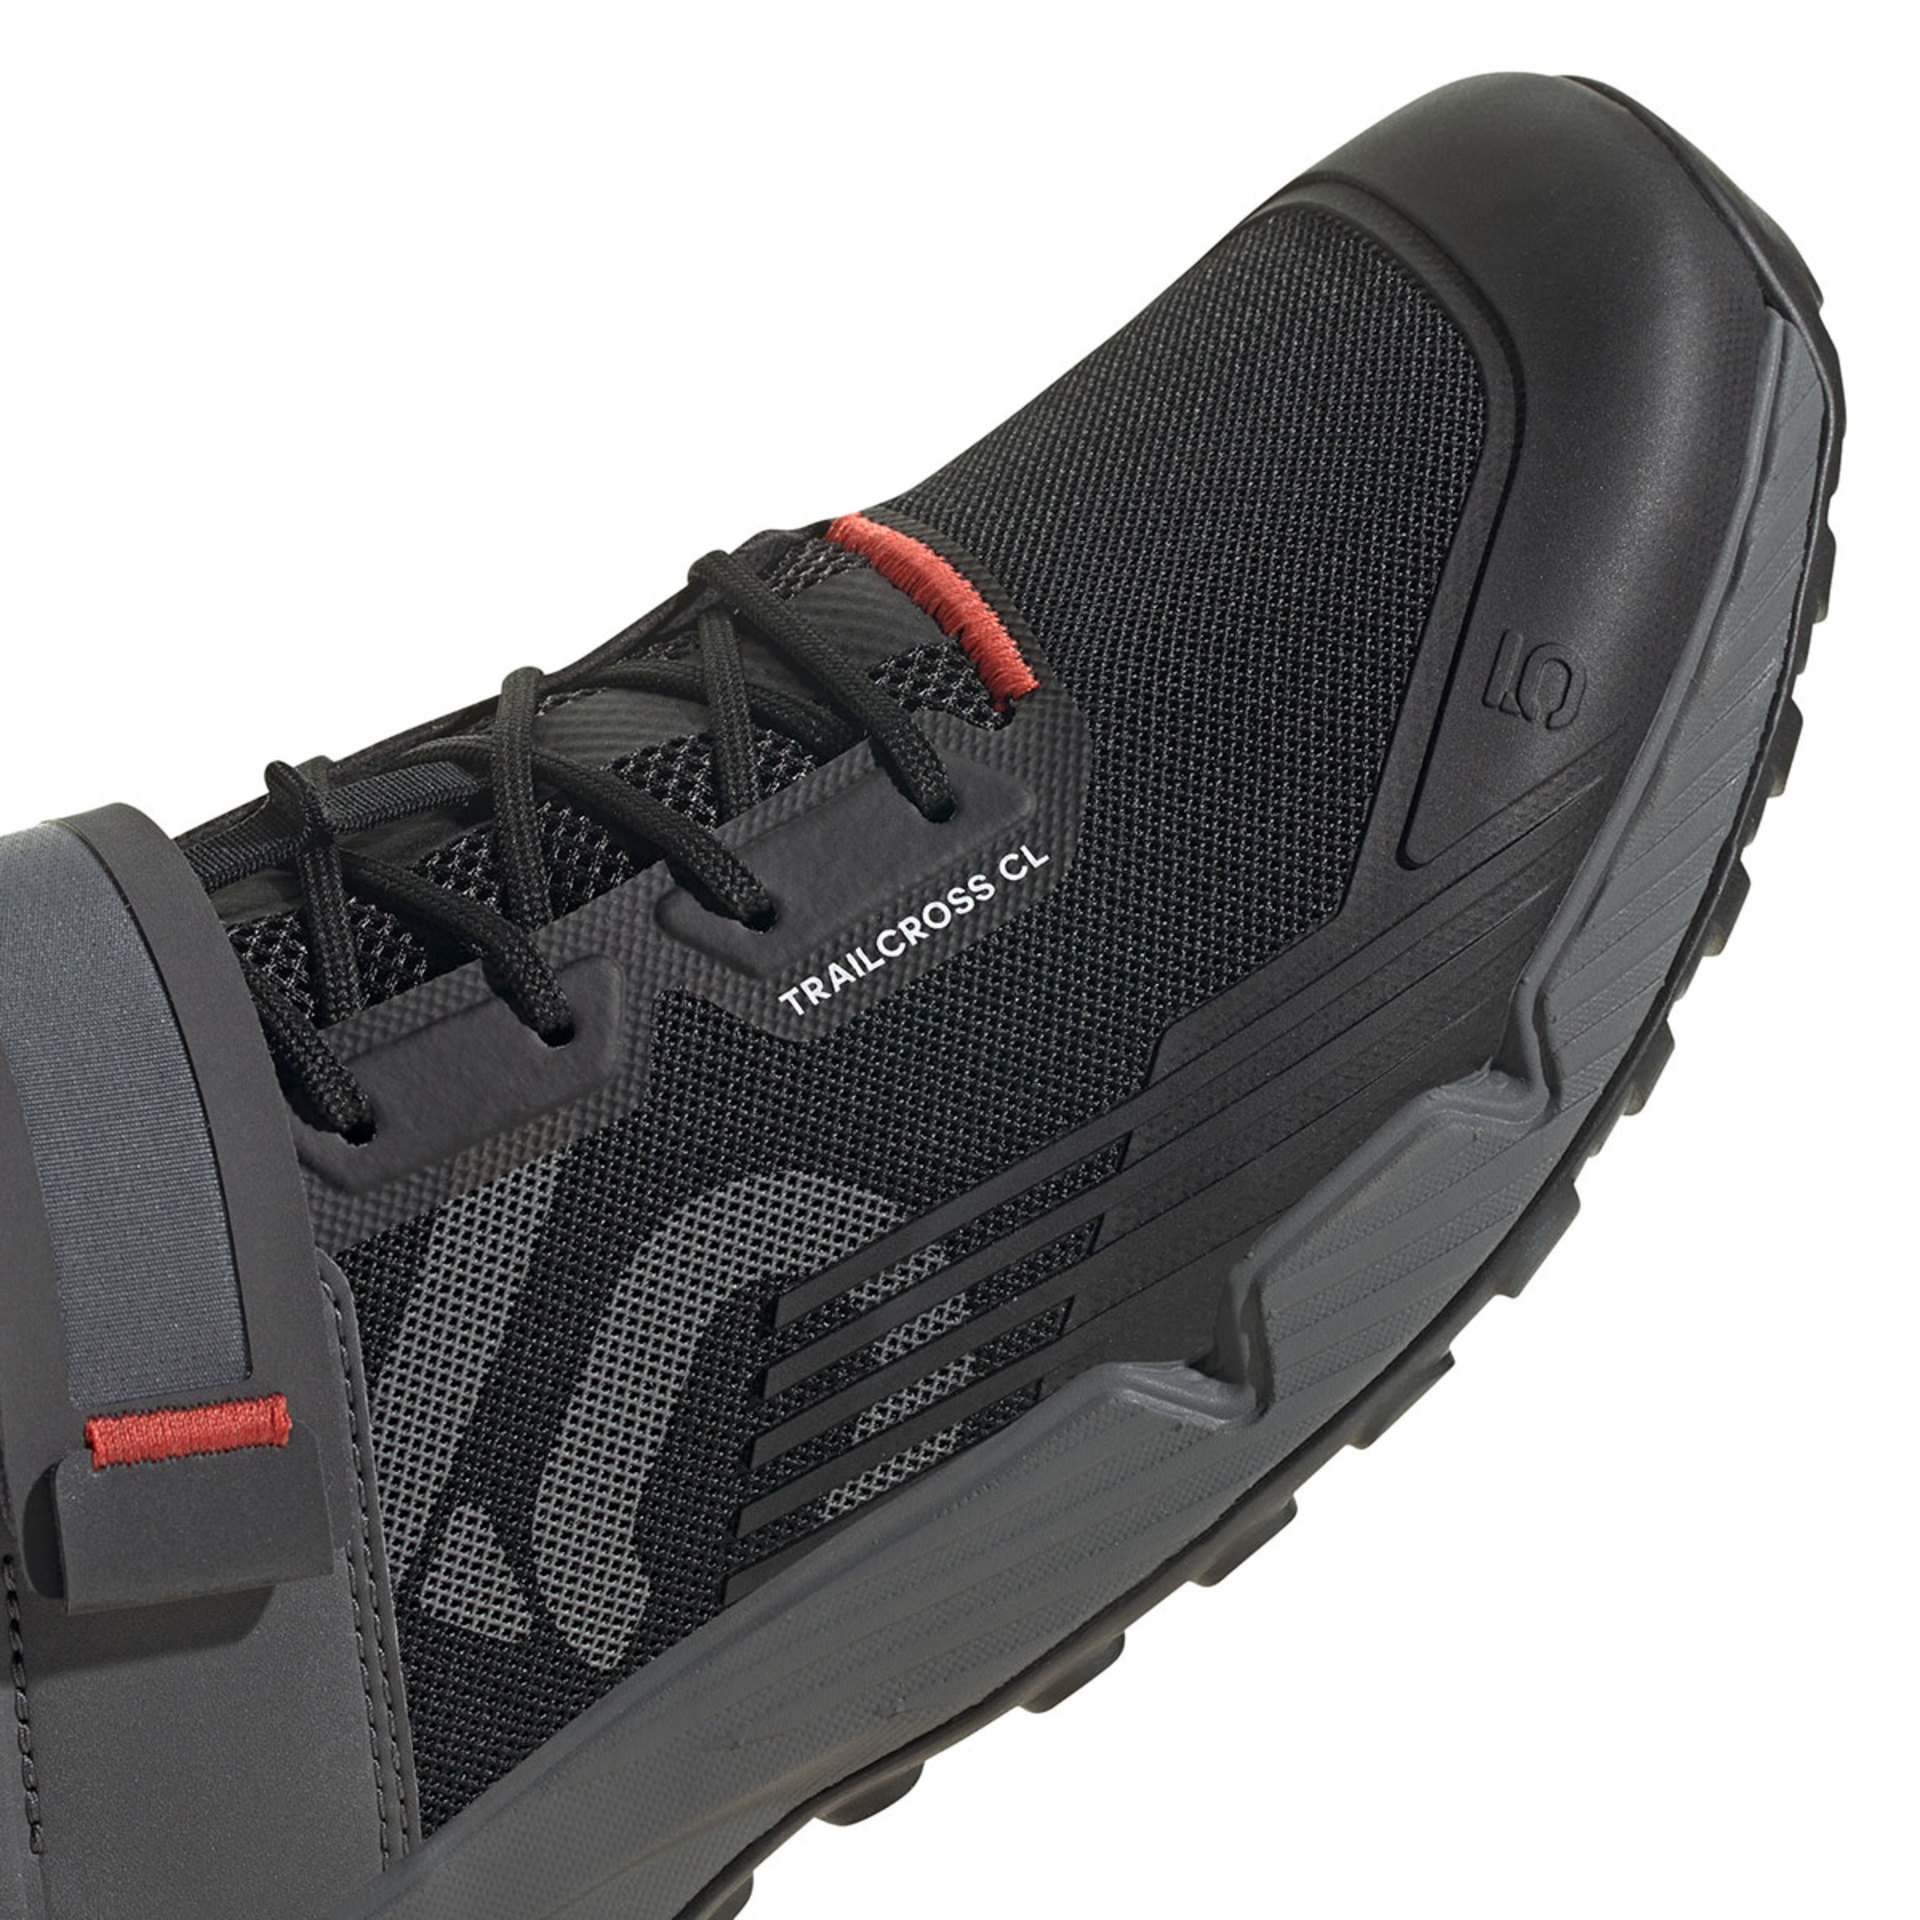 adidas Five Ten Trailcross CLI Mountainbikeschoenen Zwart/Grijs/Rood Heren